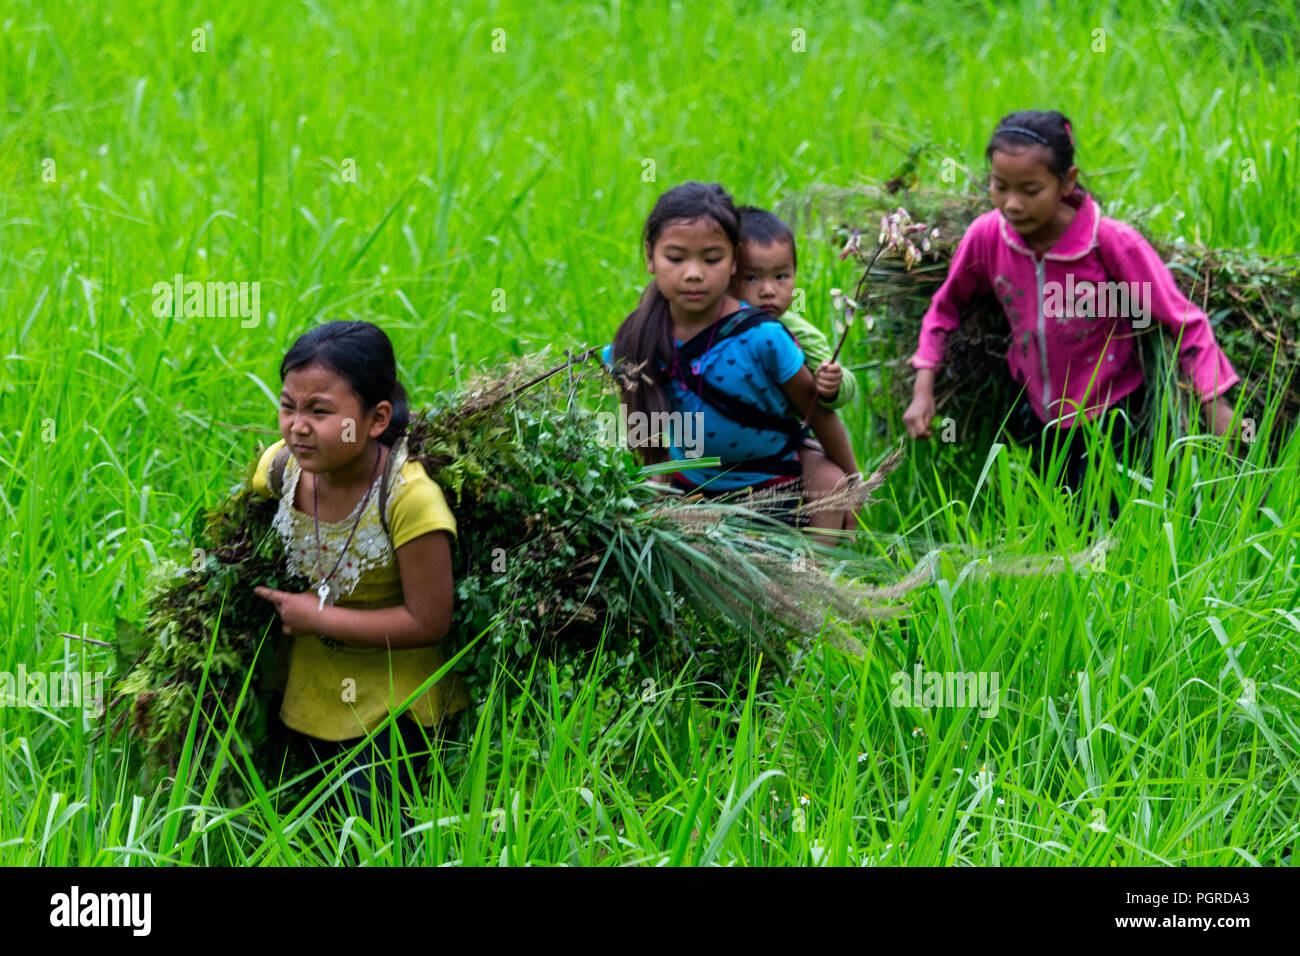 Ha Giang, Vietnam - 17. März 2018: Kinder aus der ethnischen Minderheit der Hmong, die in einem Feld. Kinderarbeit in Vietnam ist sehr häufig Stockfoto